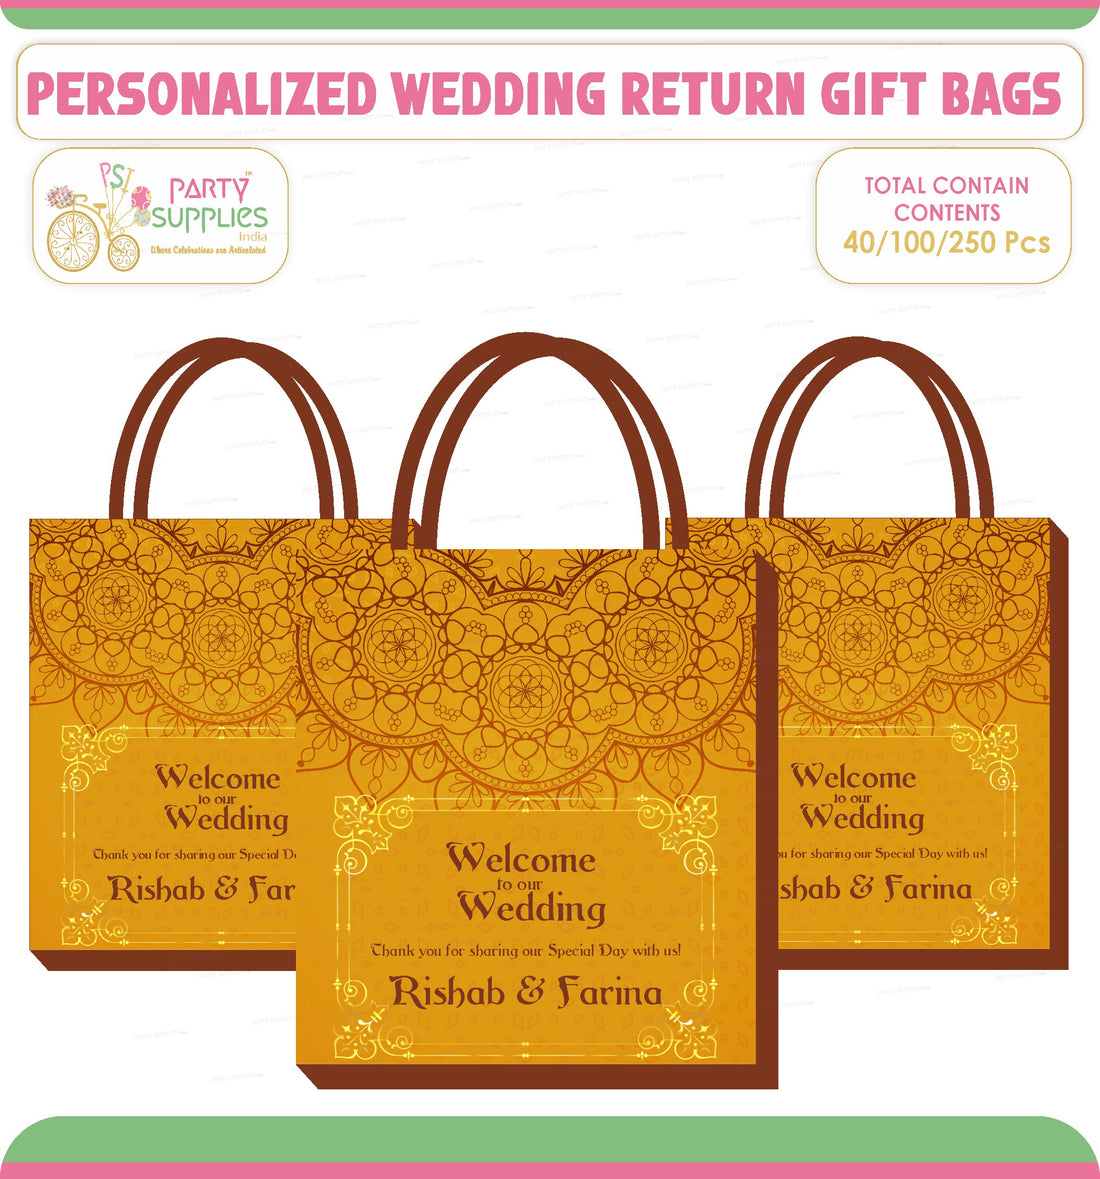 PSI Wedding Theme Return Gift Bag